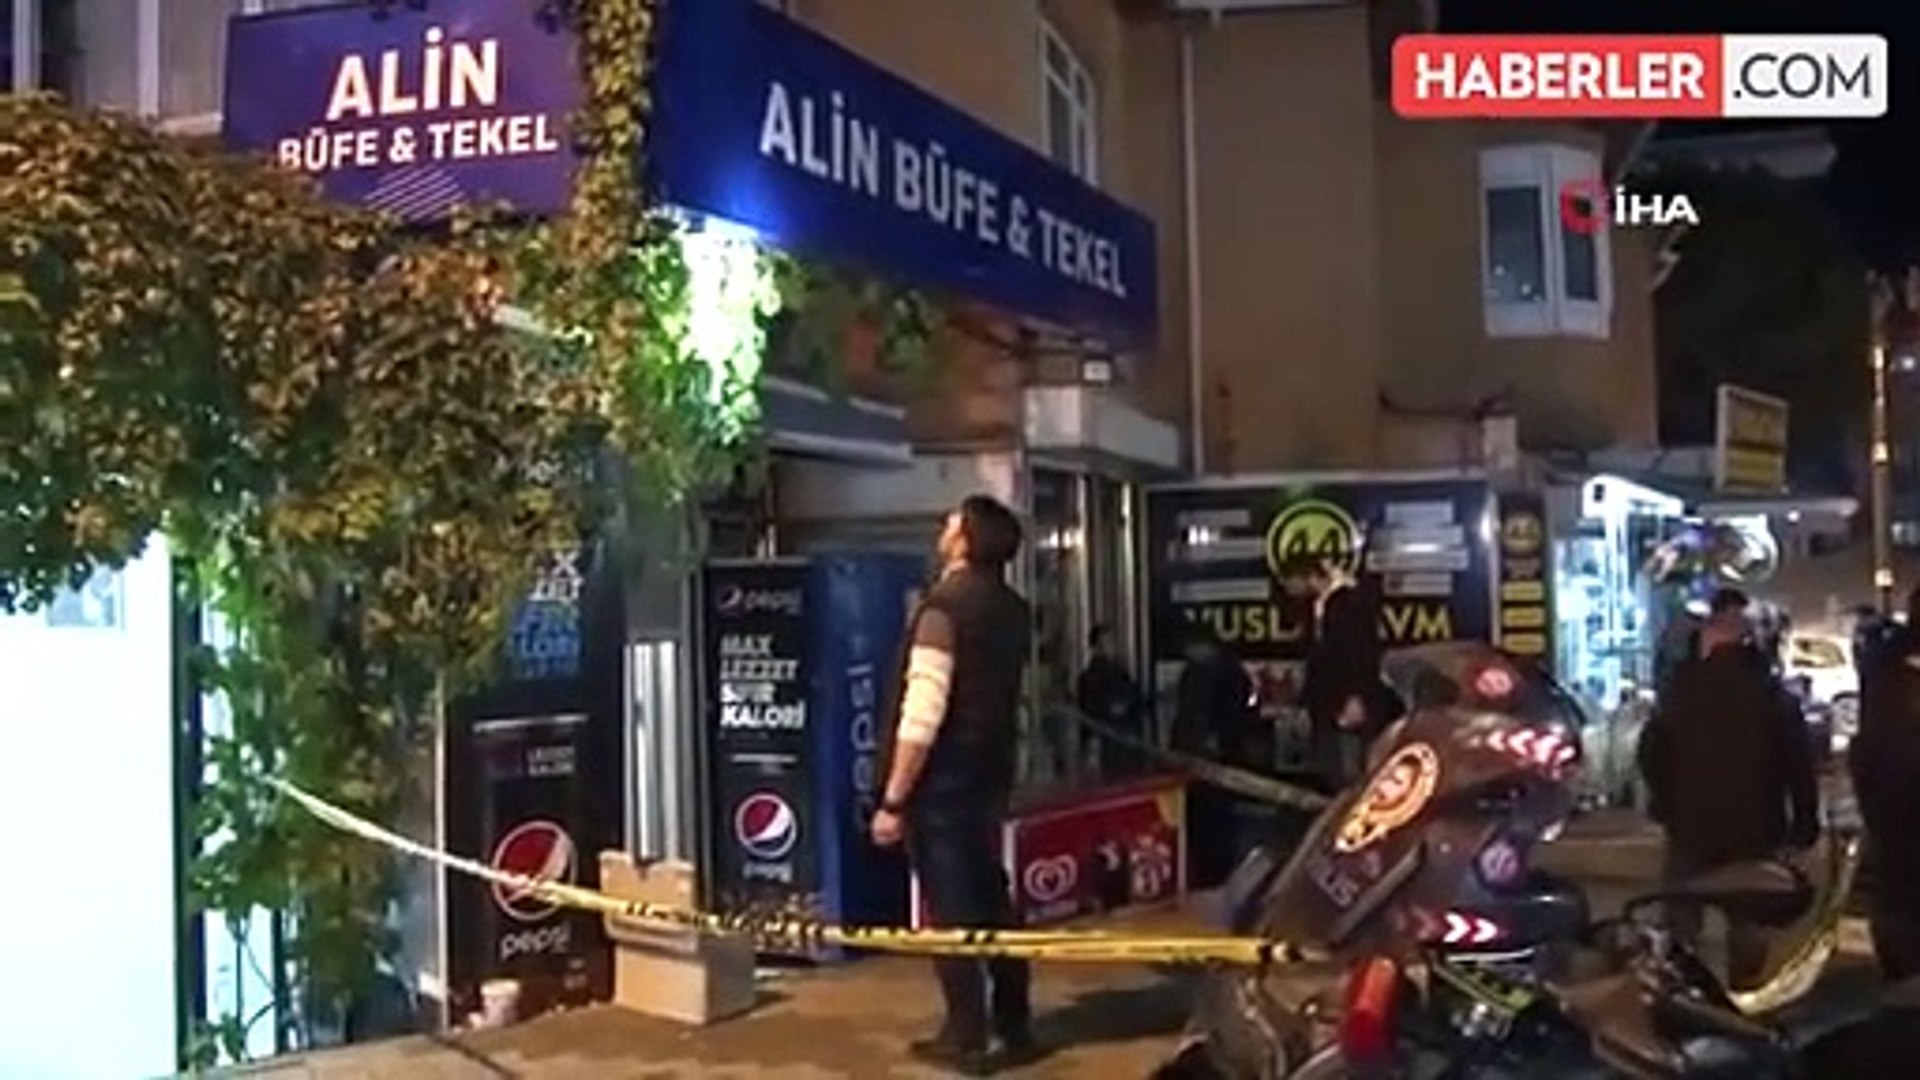 Maltepe'de tekel bayisine silahlı saldırı: 1 ağır yaralı - Dailymotion Video